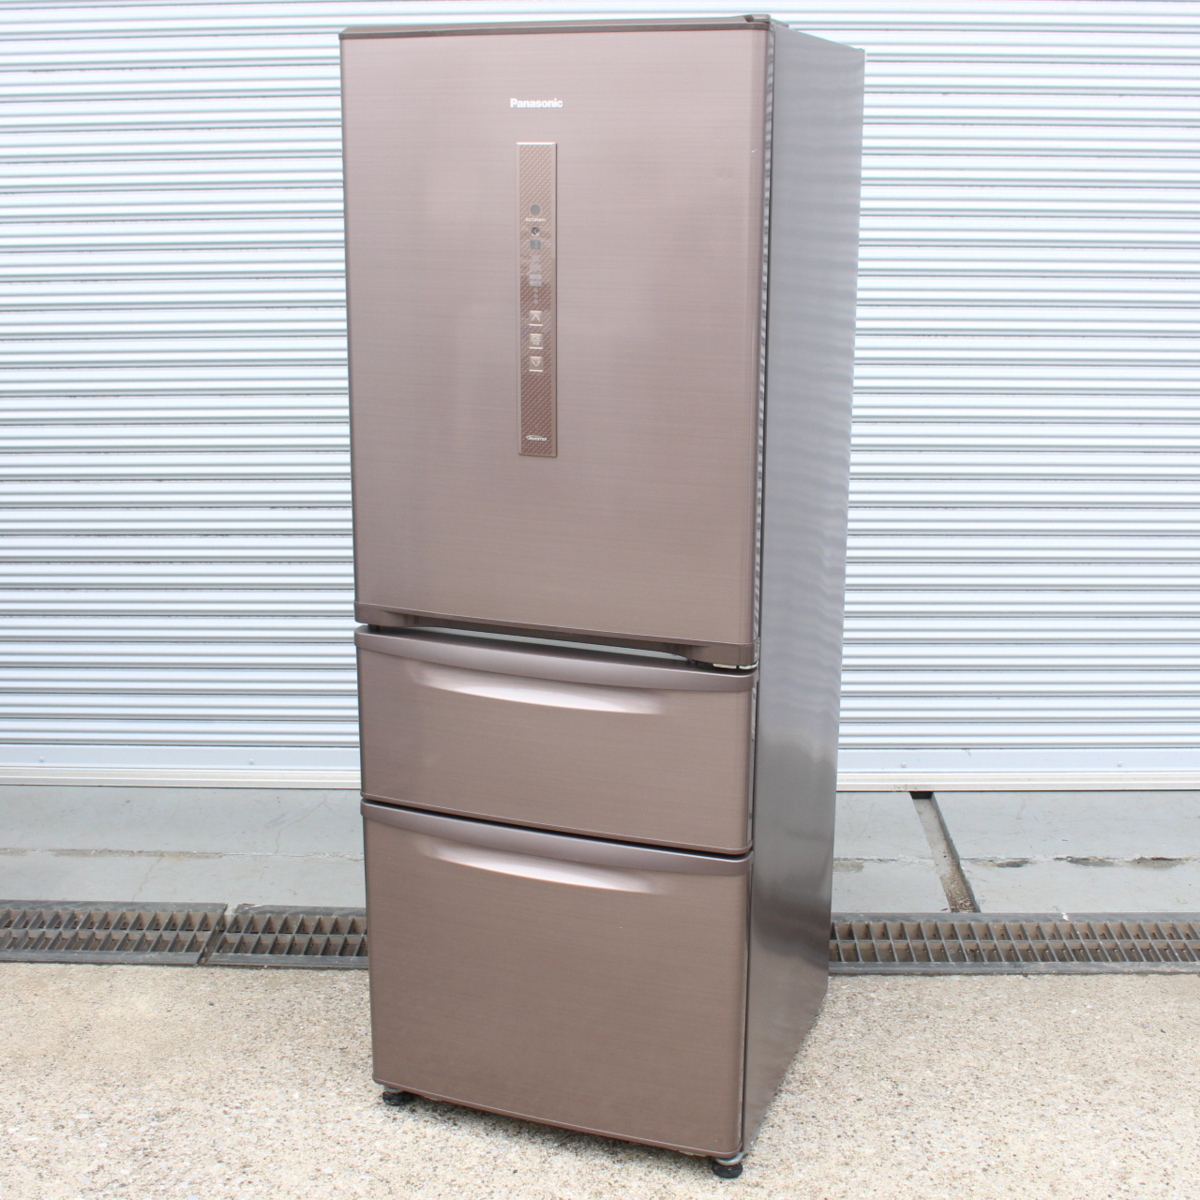 川崎市高津区にて パナソニック ノンフロン冷凍冷蔵庫 NR-C32EM-T 2016年製 を出張買取させて頂きました。